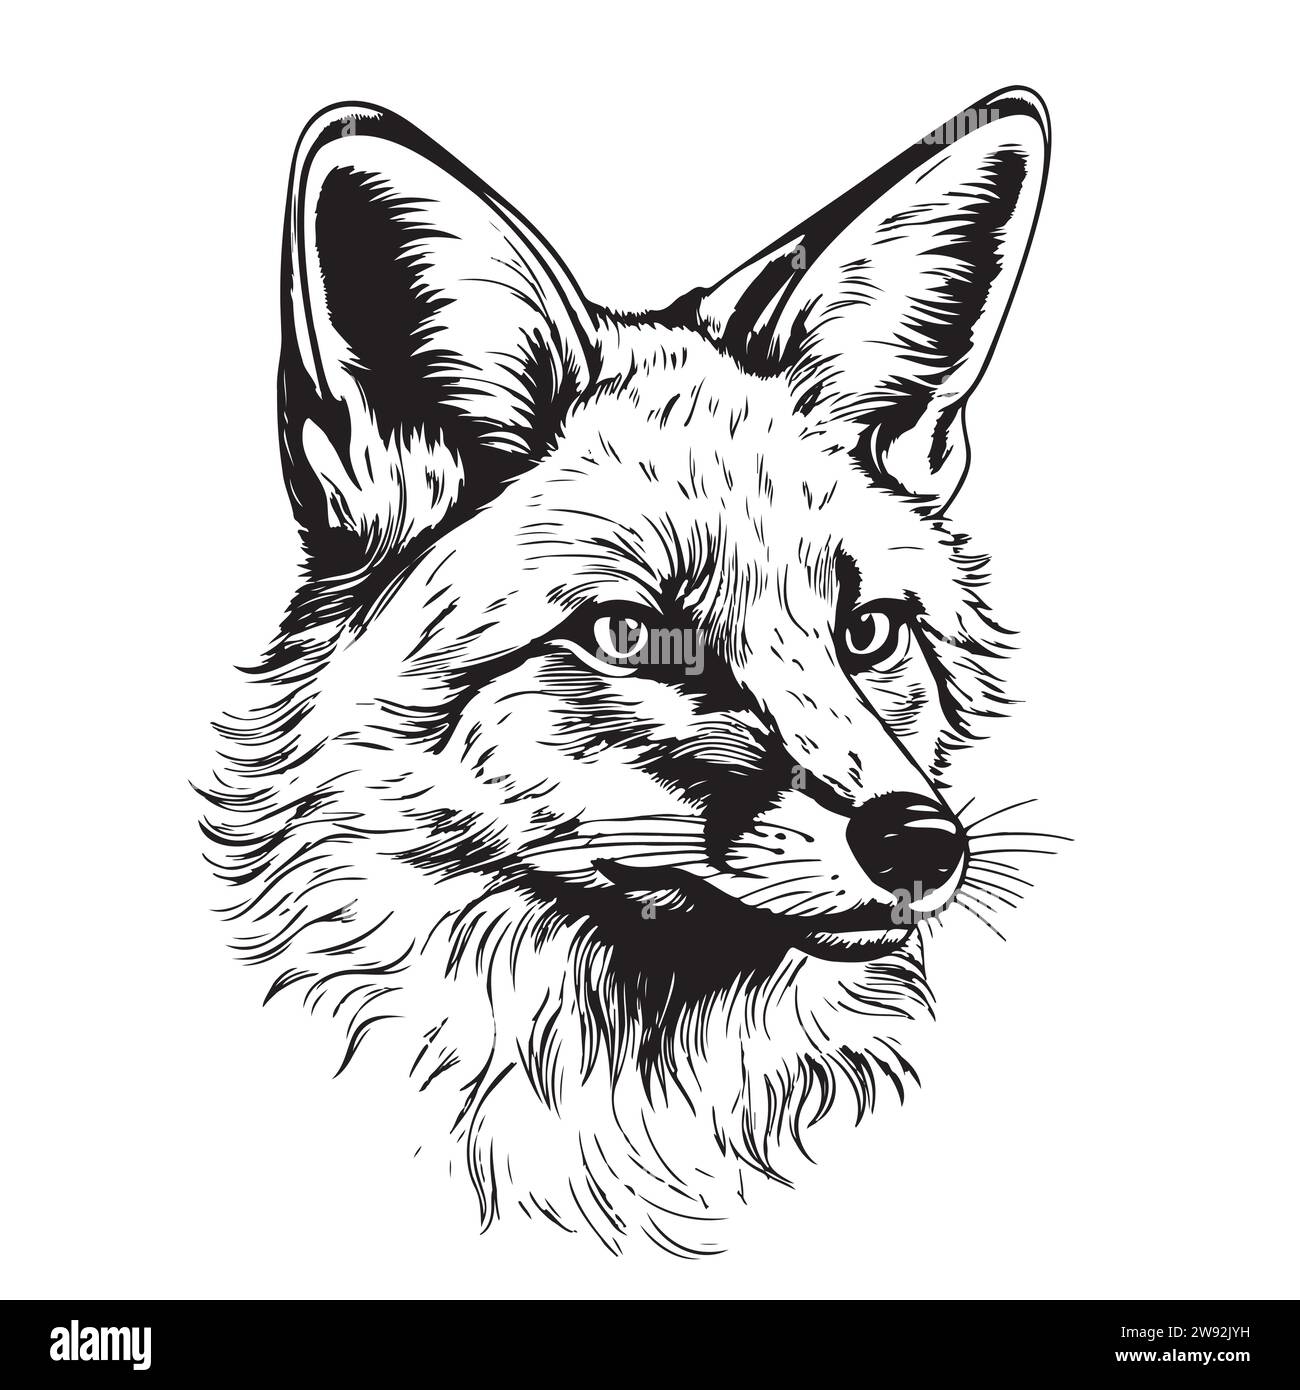 Fox. Graphique, croquis, noir et blanc, portrait dessiné à la main d'une tête de renard Illustration de Vecteur